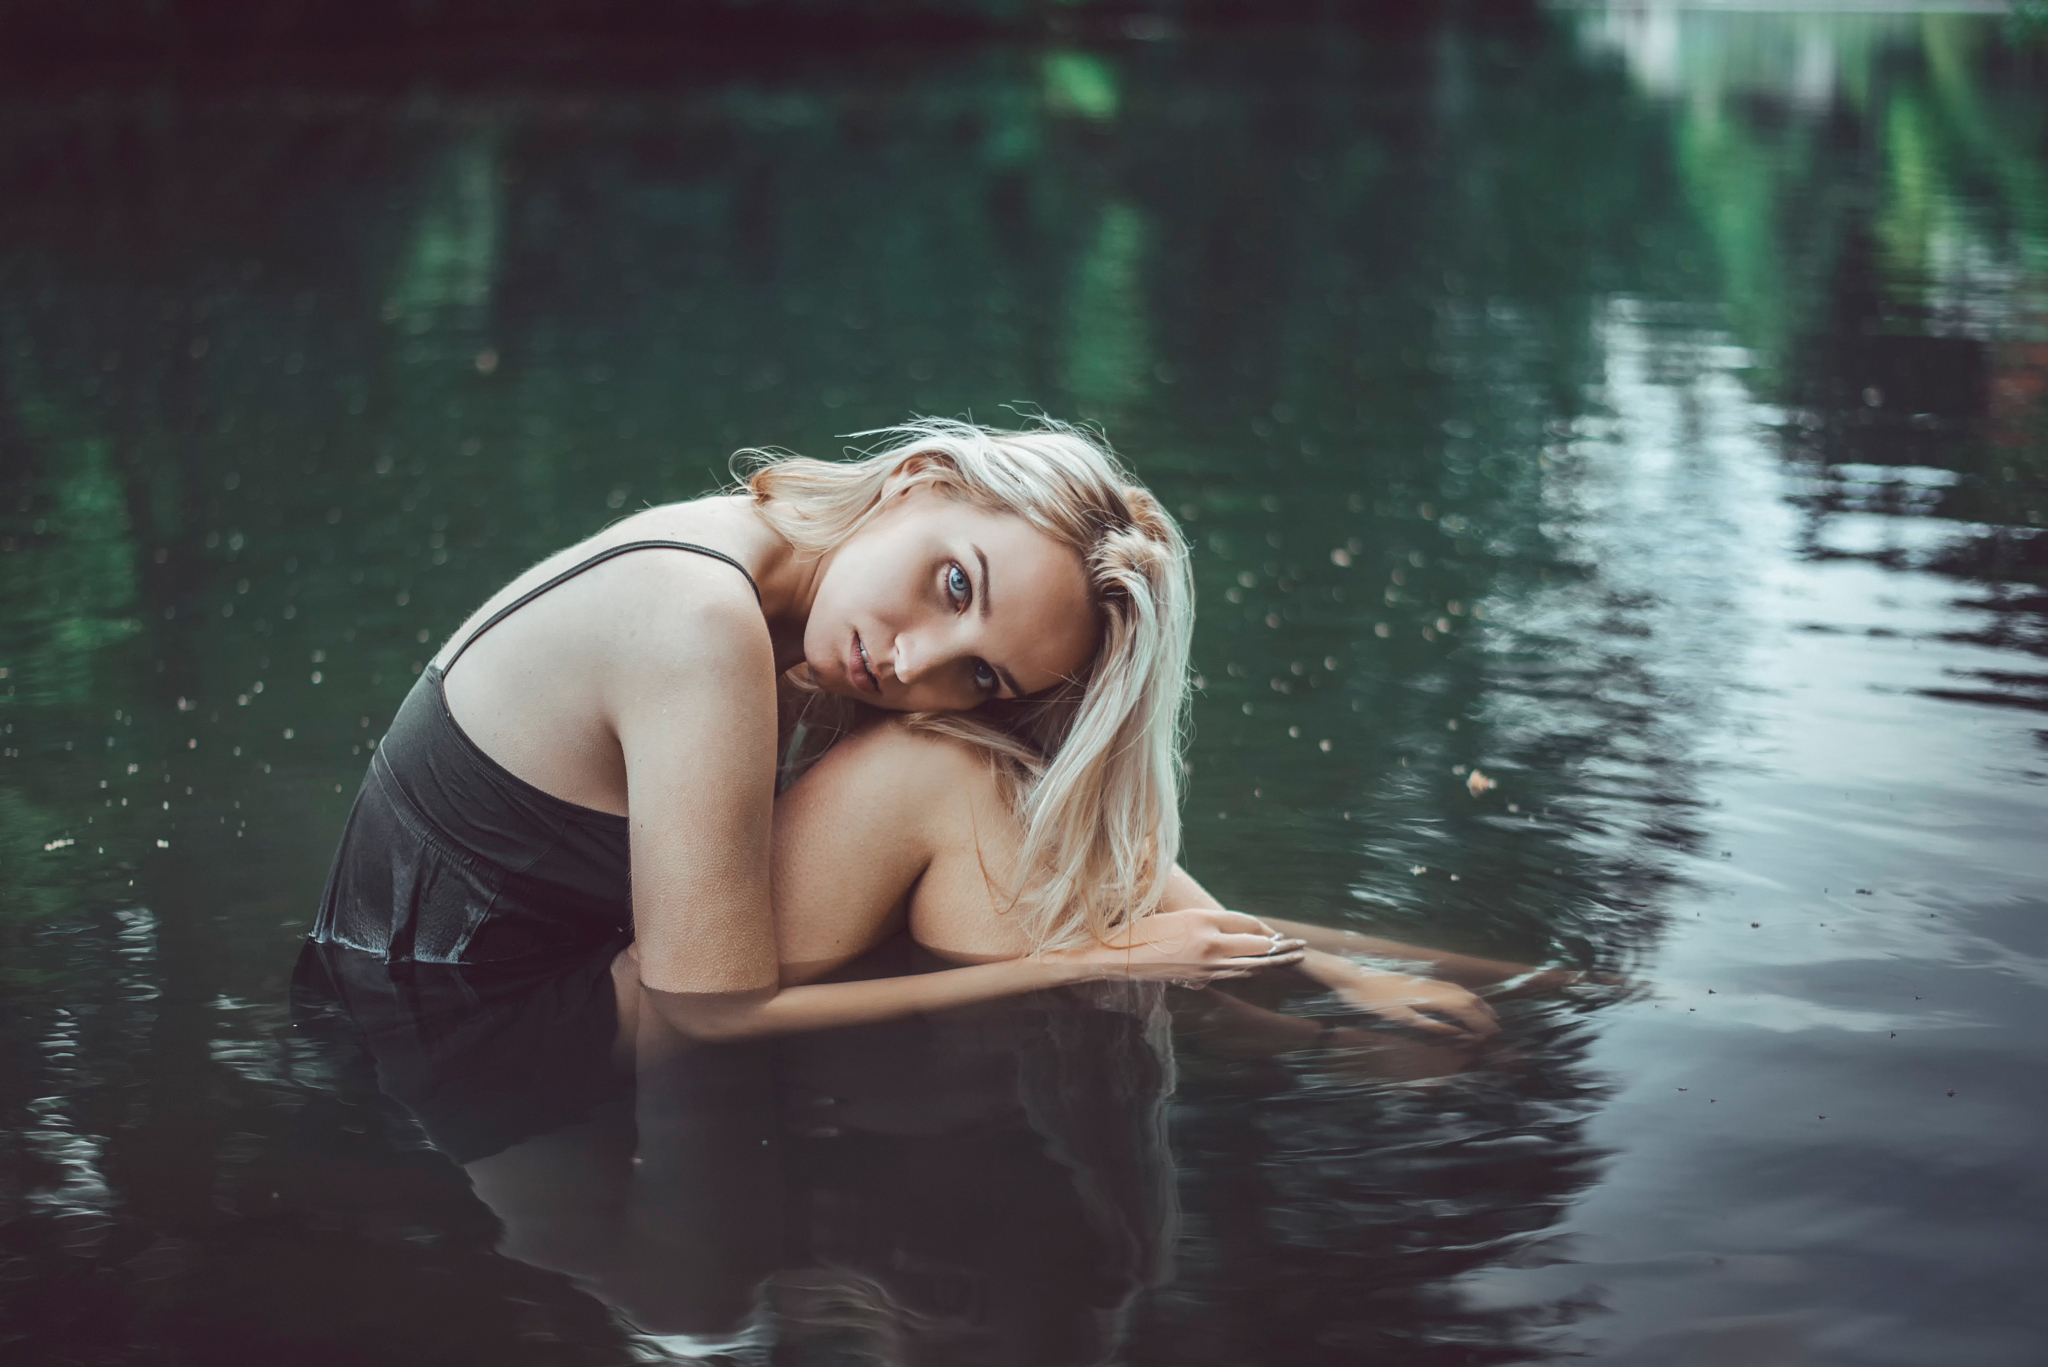 Няшная киска голой девочки на пруду  15 фото эротики